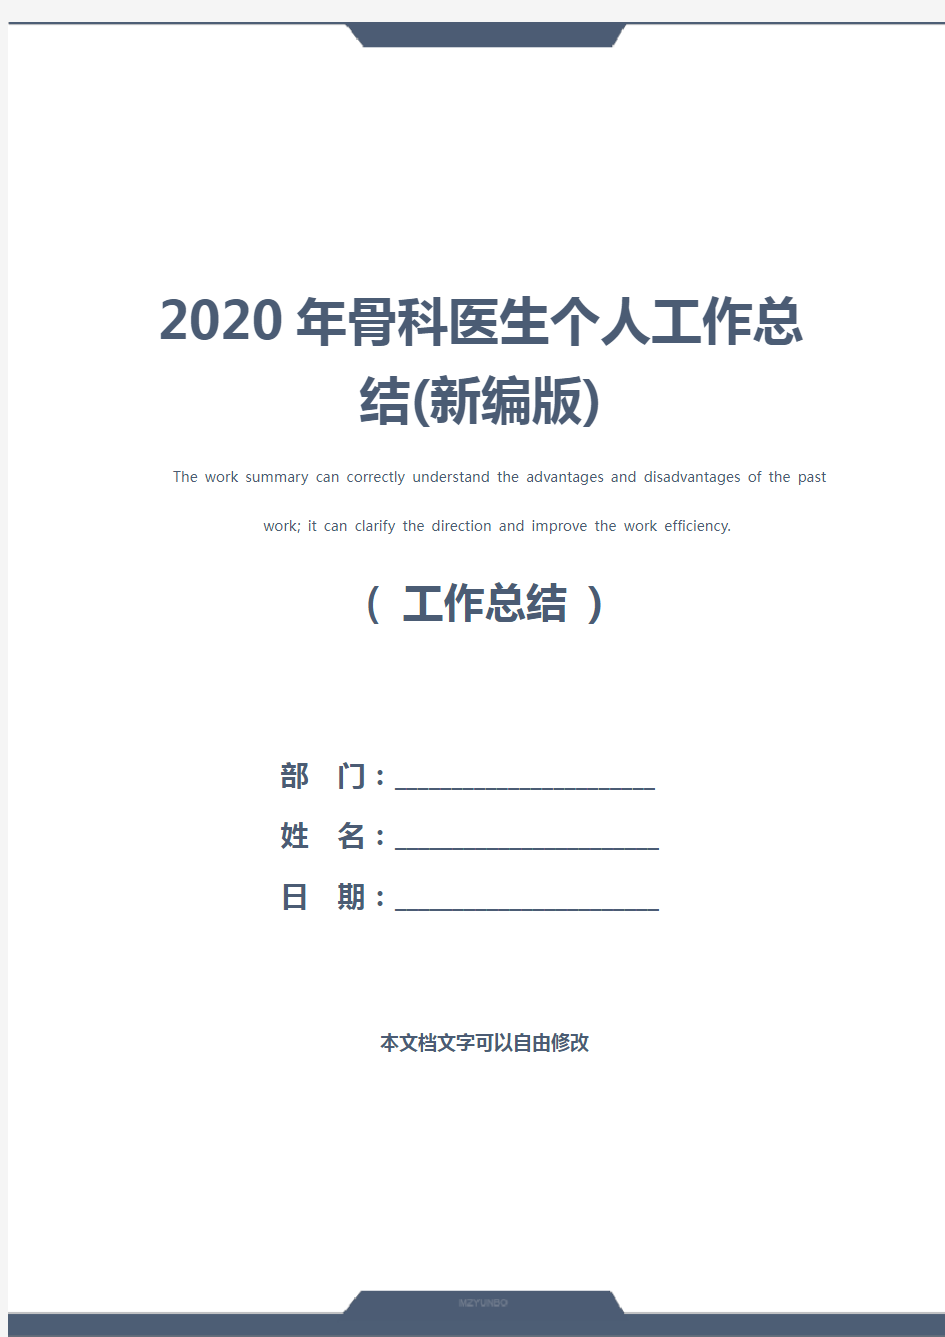 2020年骨科医生个人工作总结(新编版)